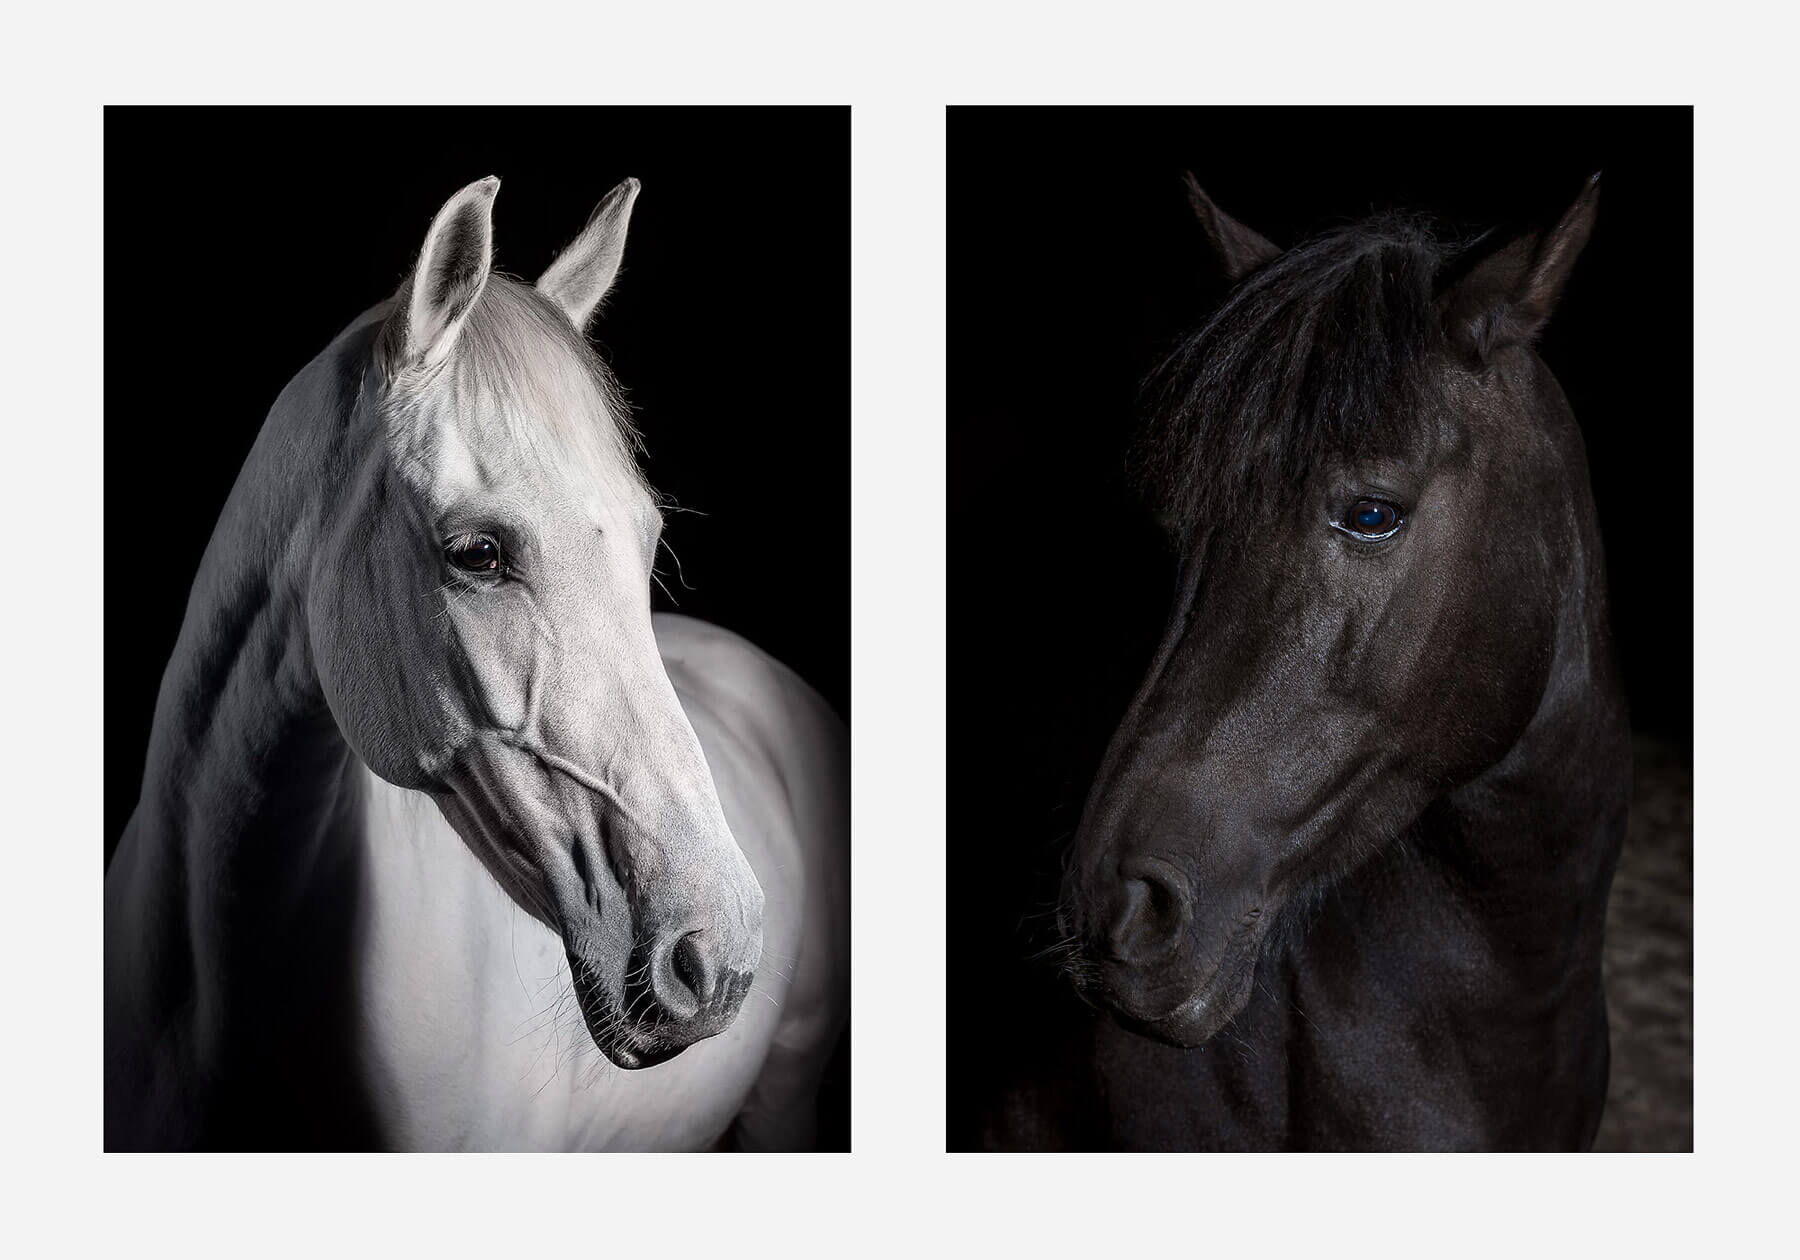 Fotoshooting mit Pferd: Portrait von weissem und schwarzem Pferd